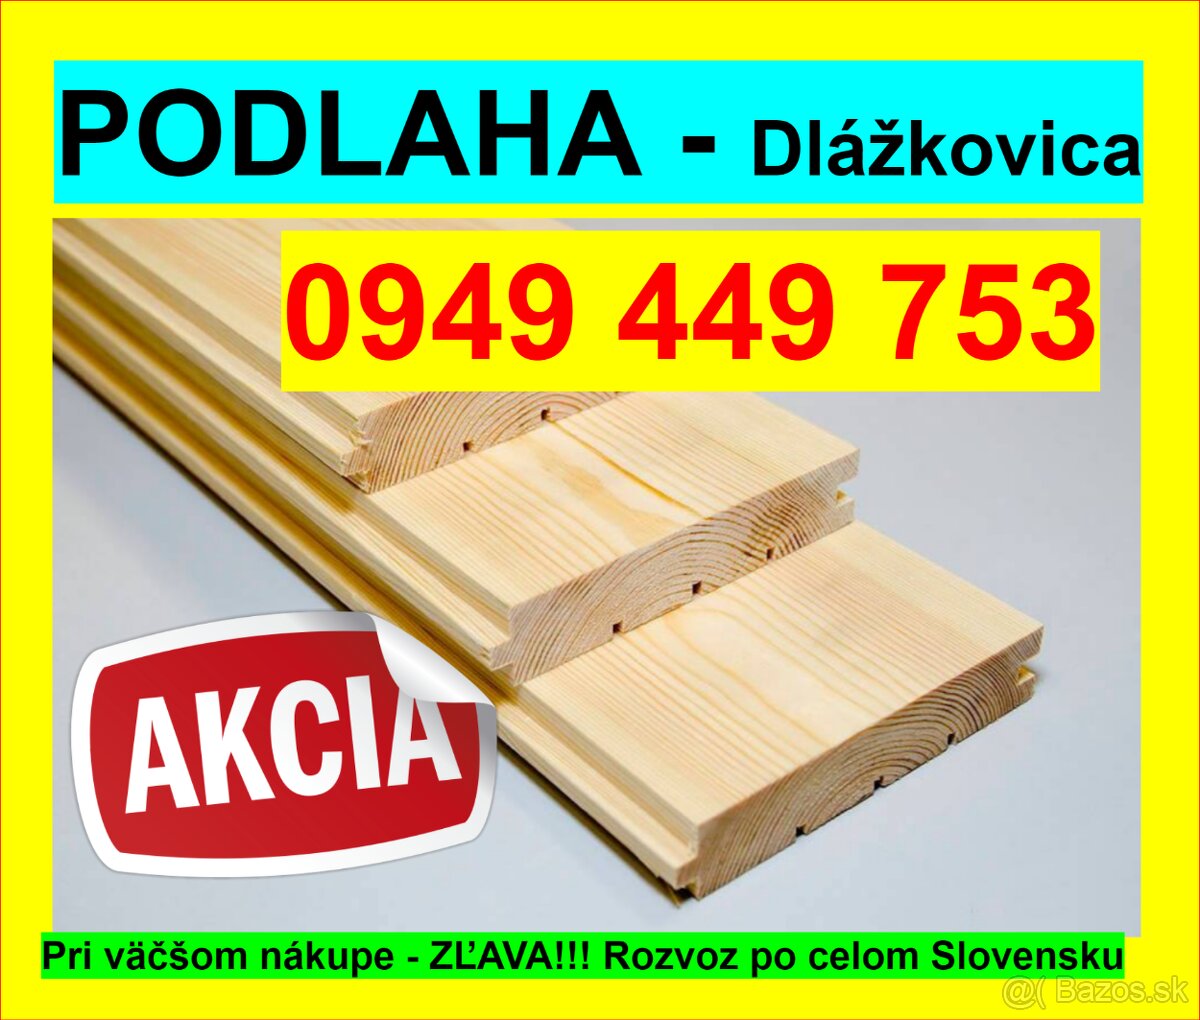 # 2 Najlacnejšia Podlaha, Dlážkovica, Palubky 0949 449 753